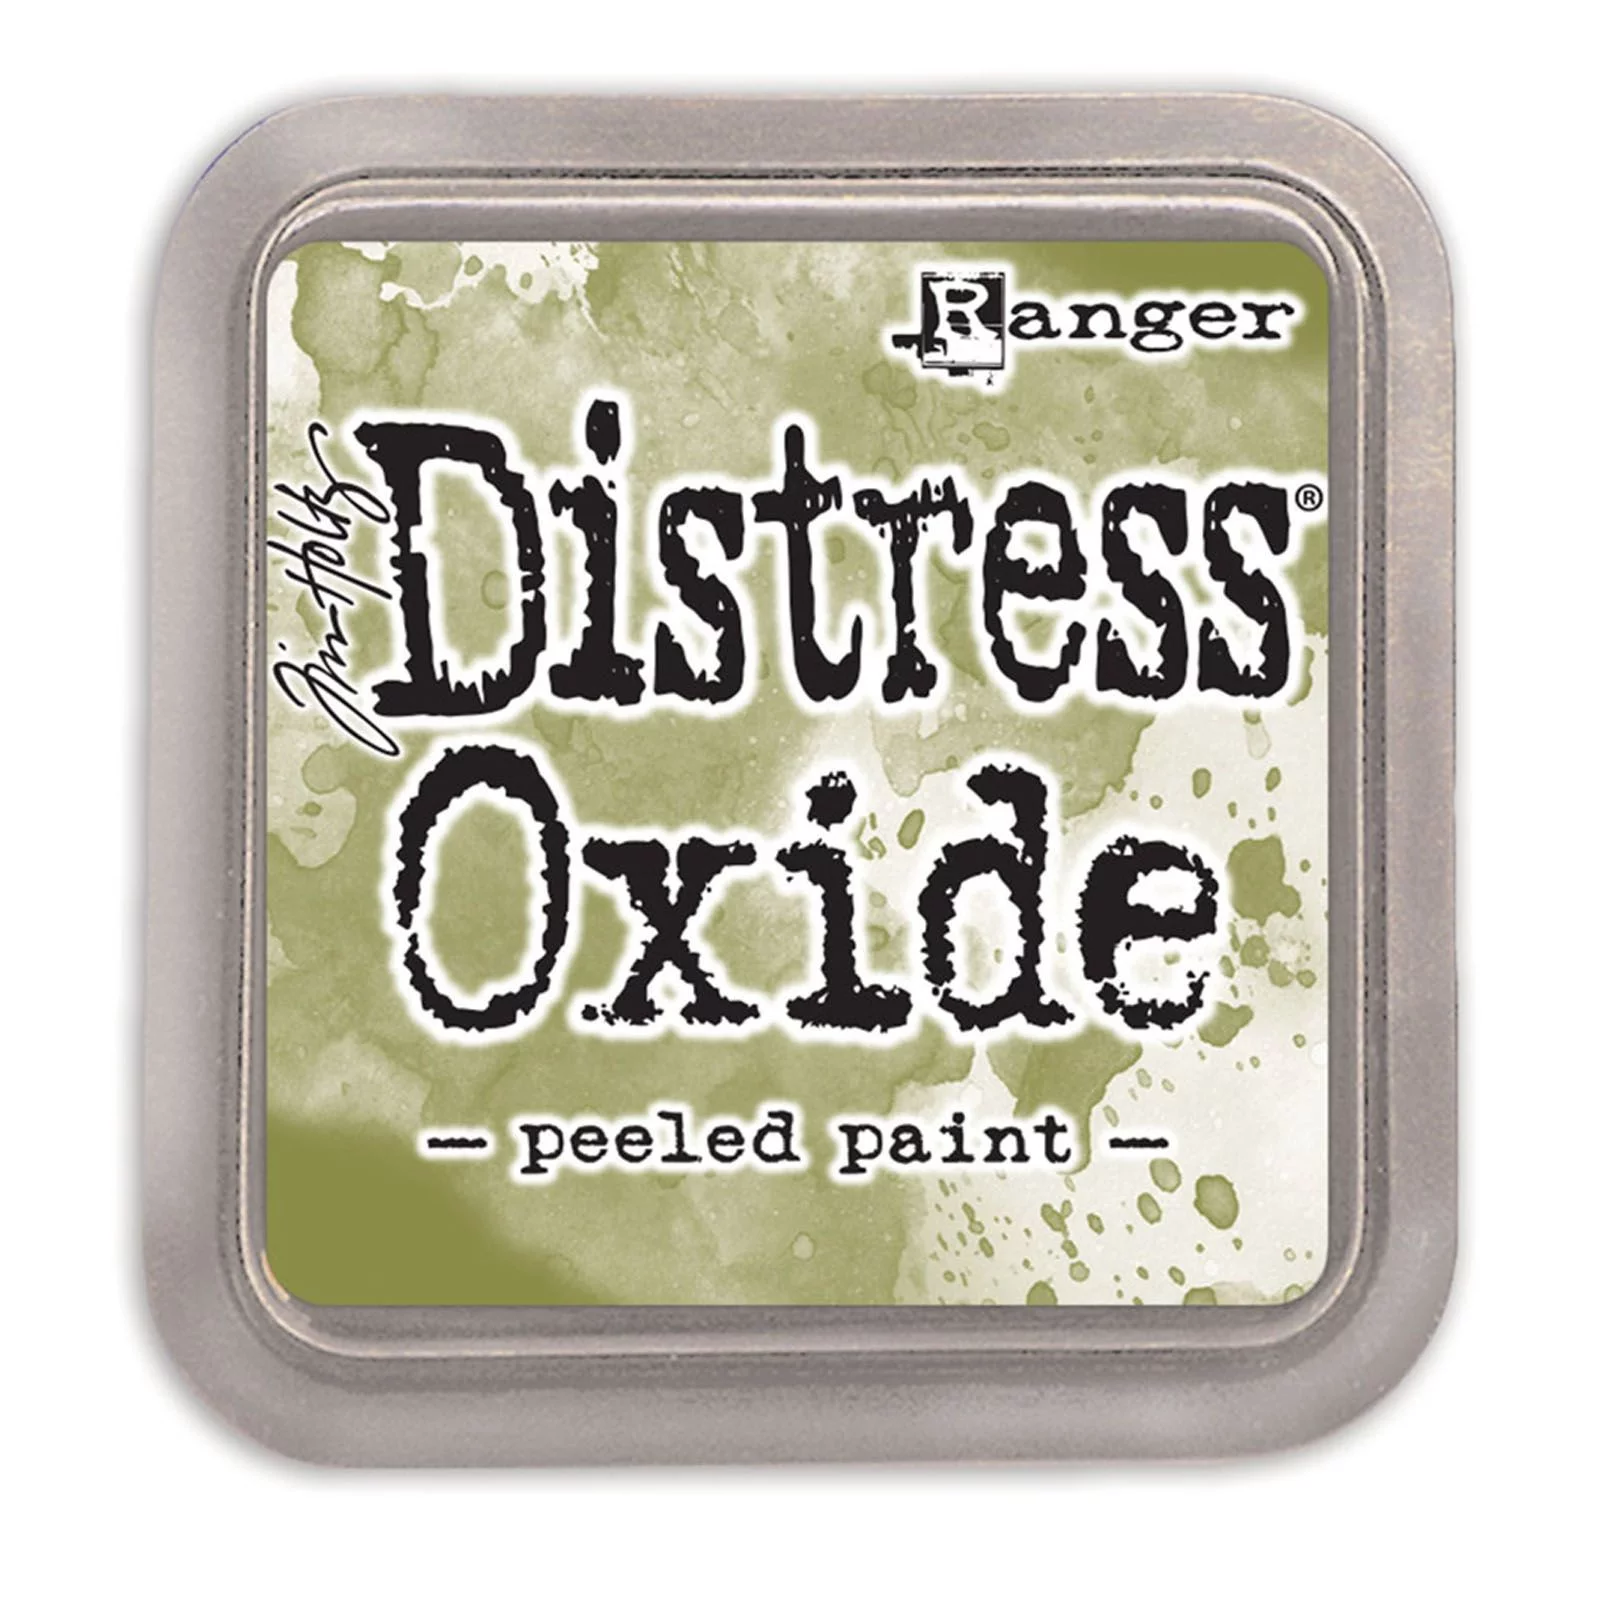 Distress Oxide - Peeled paint